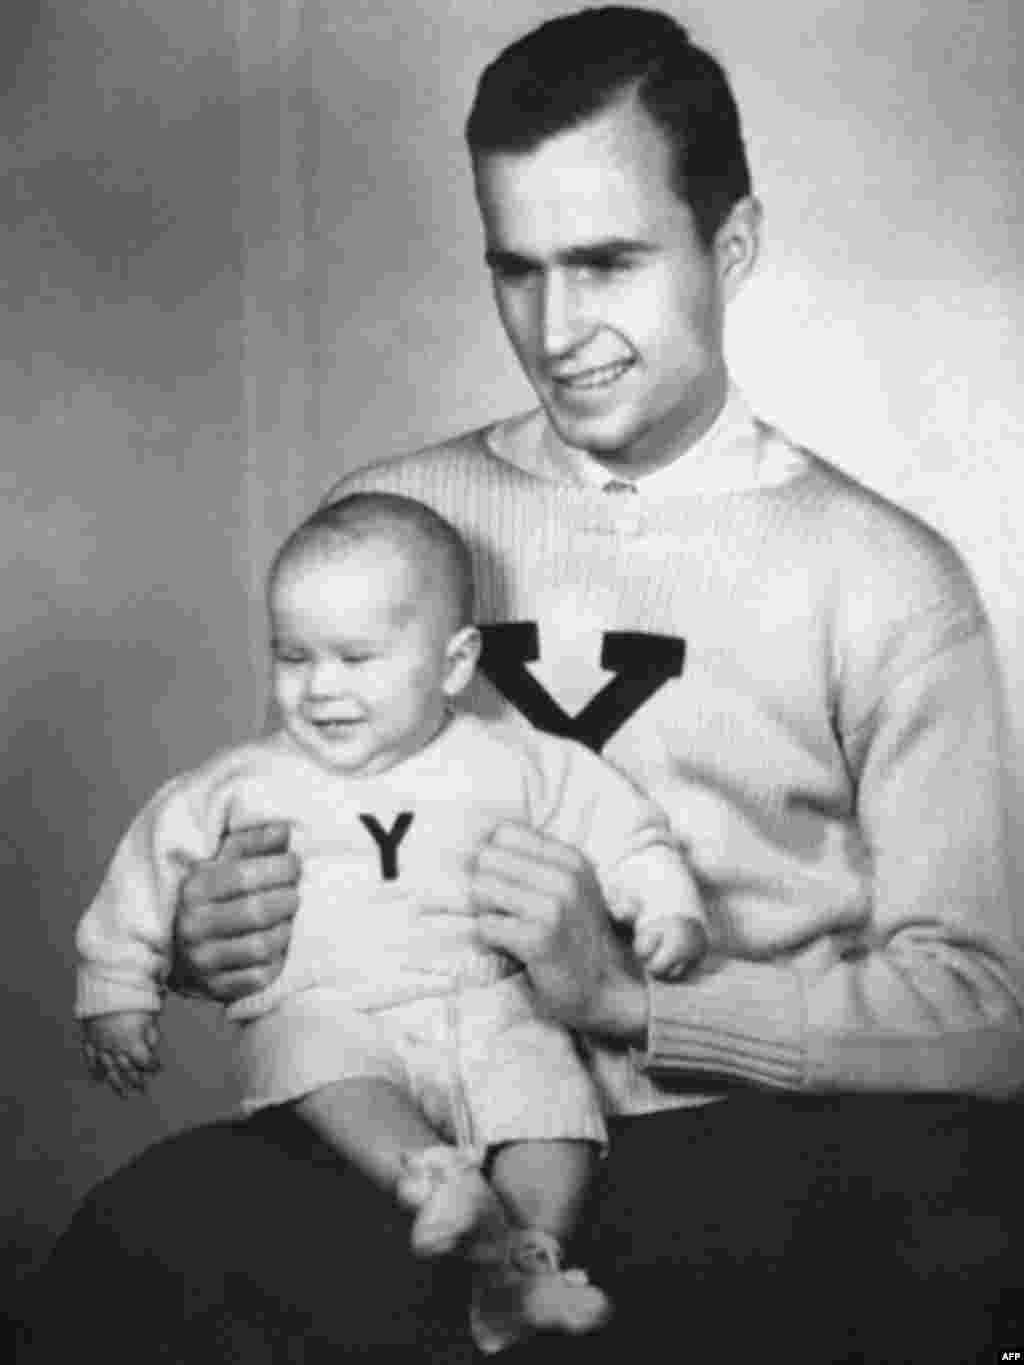 Будущие президенты - Будущие президенты США Джордж Буш старший и его сын в одинаковых свитерах со знаком Йельского университета. Нью-Хейвен, штат Коннектикут, 1946 год.